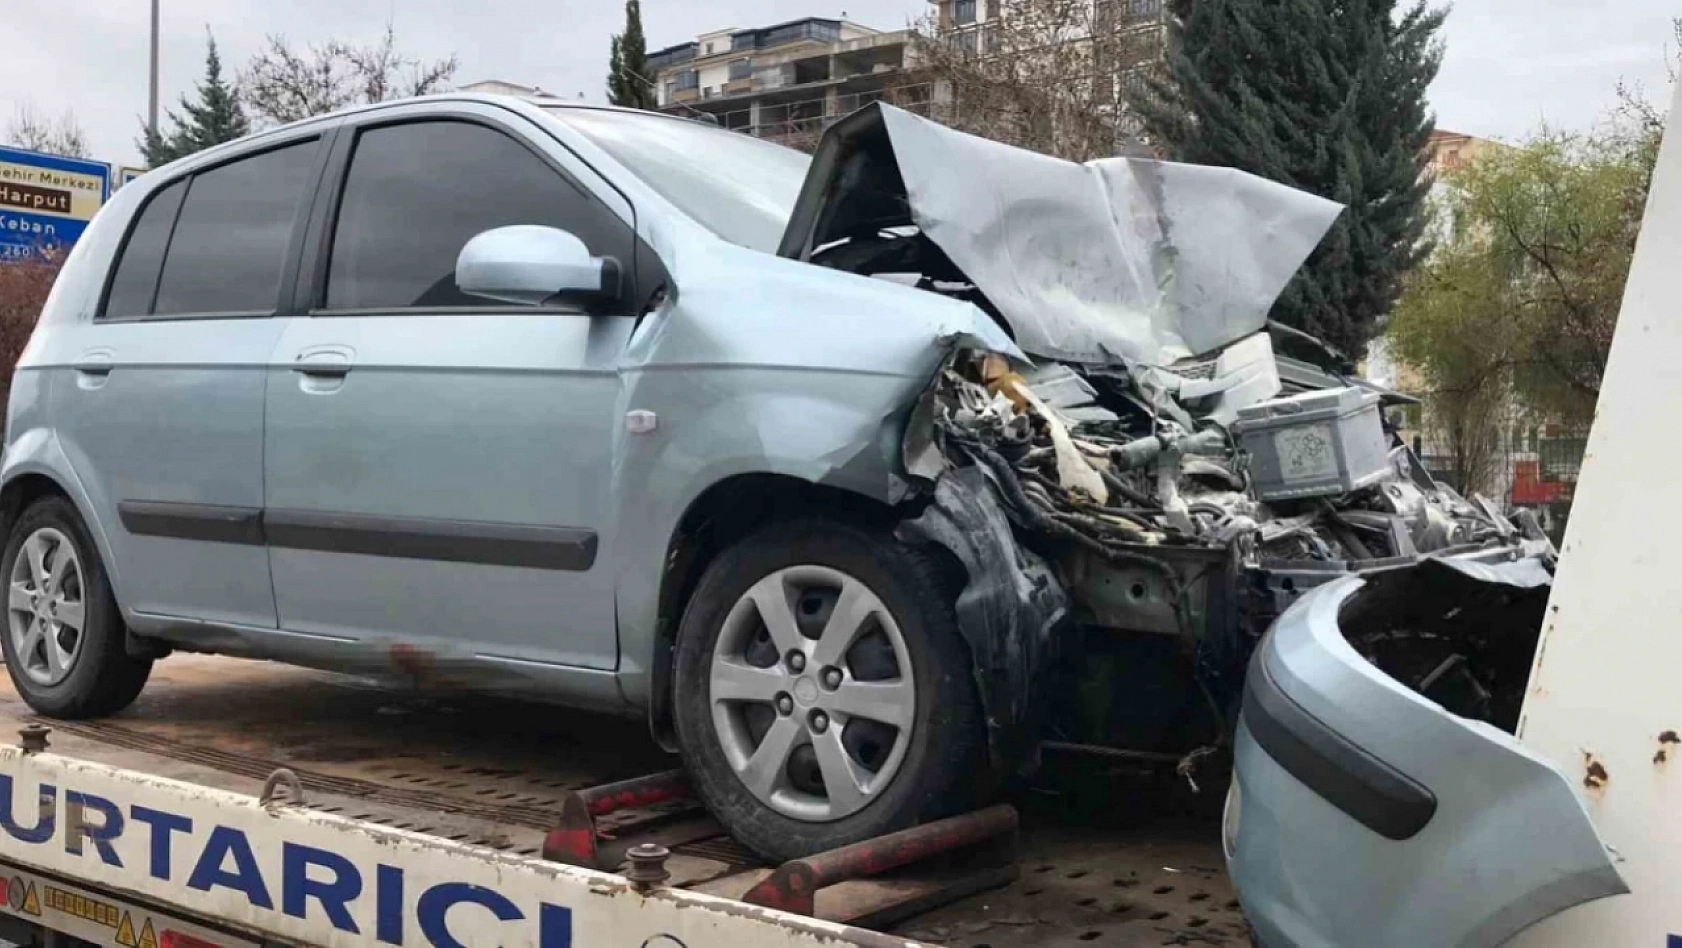 Elazığ'da Trafik Kazası